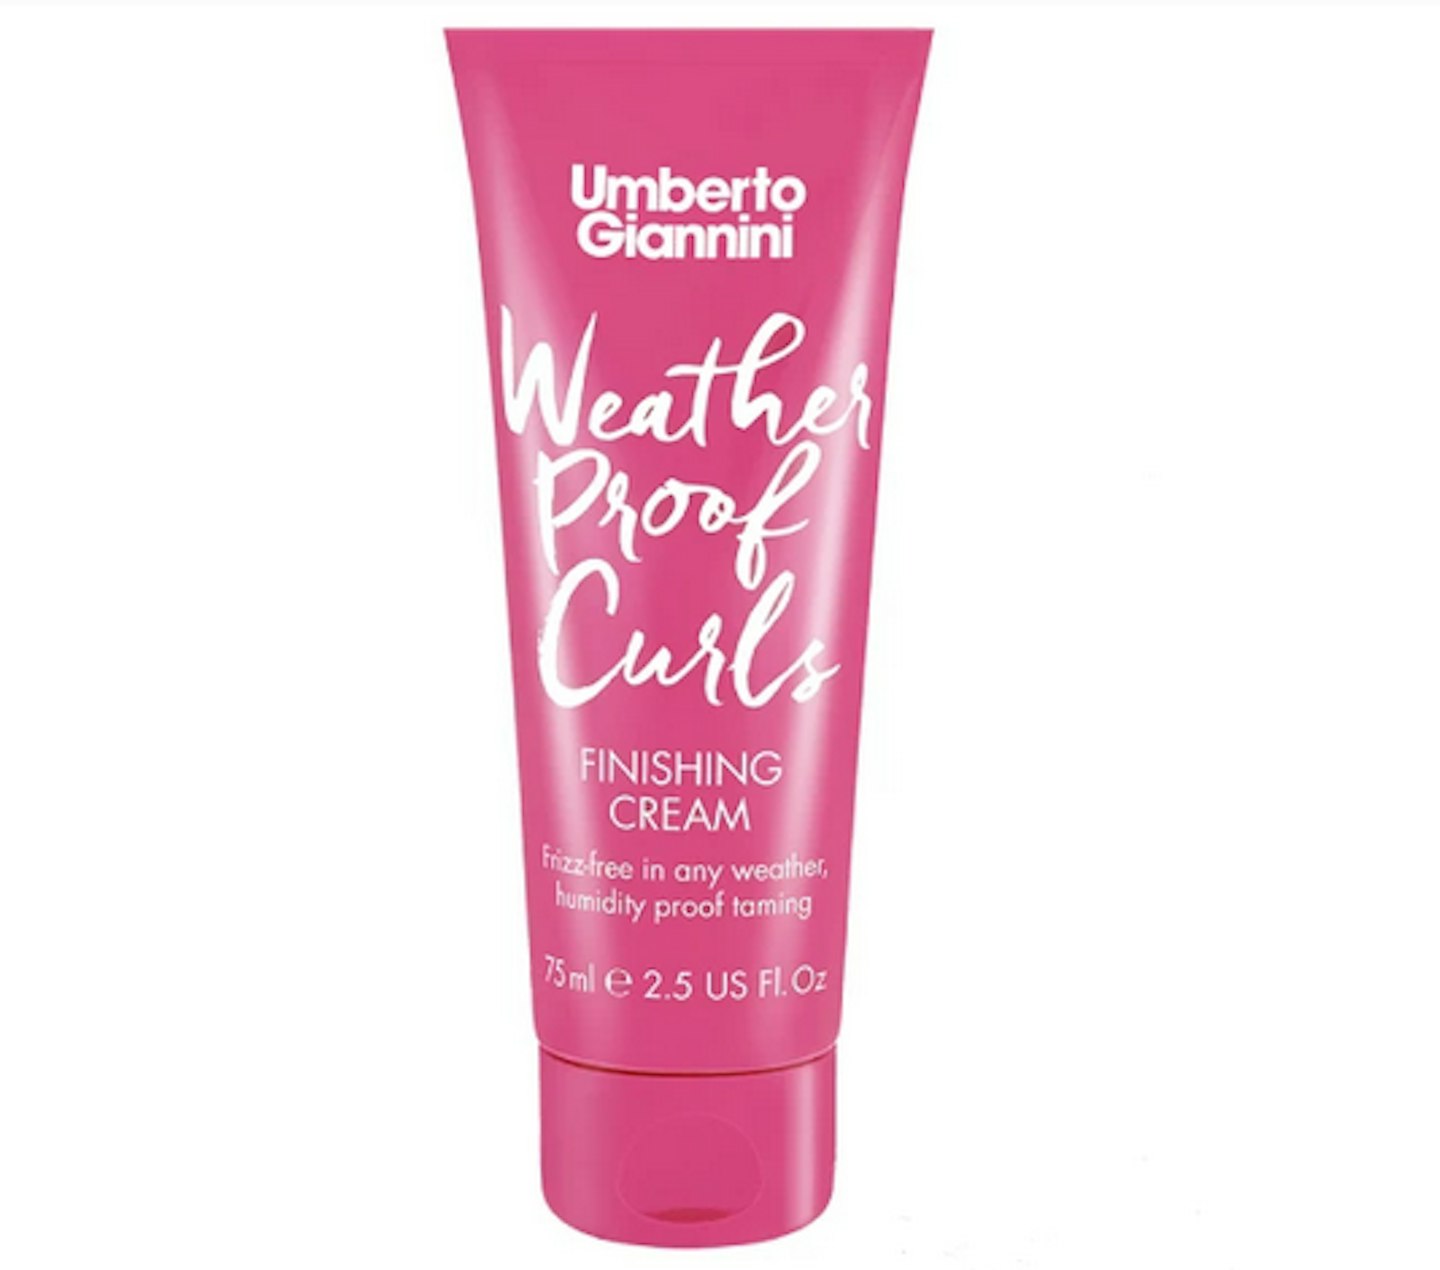 Umberto Gianninini Weatherproof Curls Finishing Cream, £7